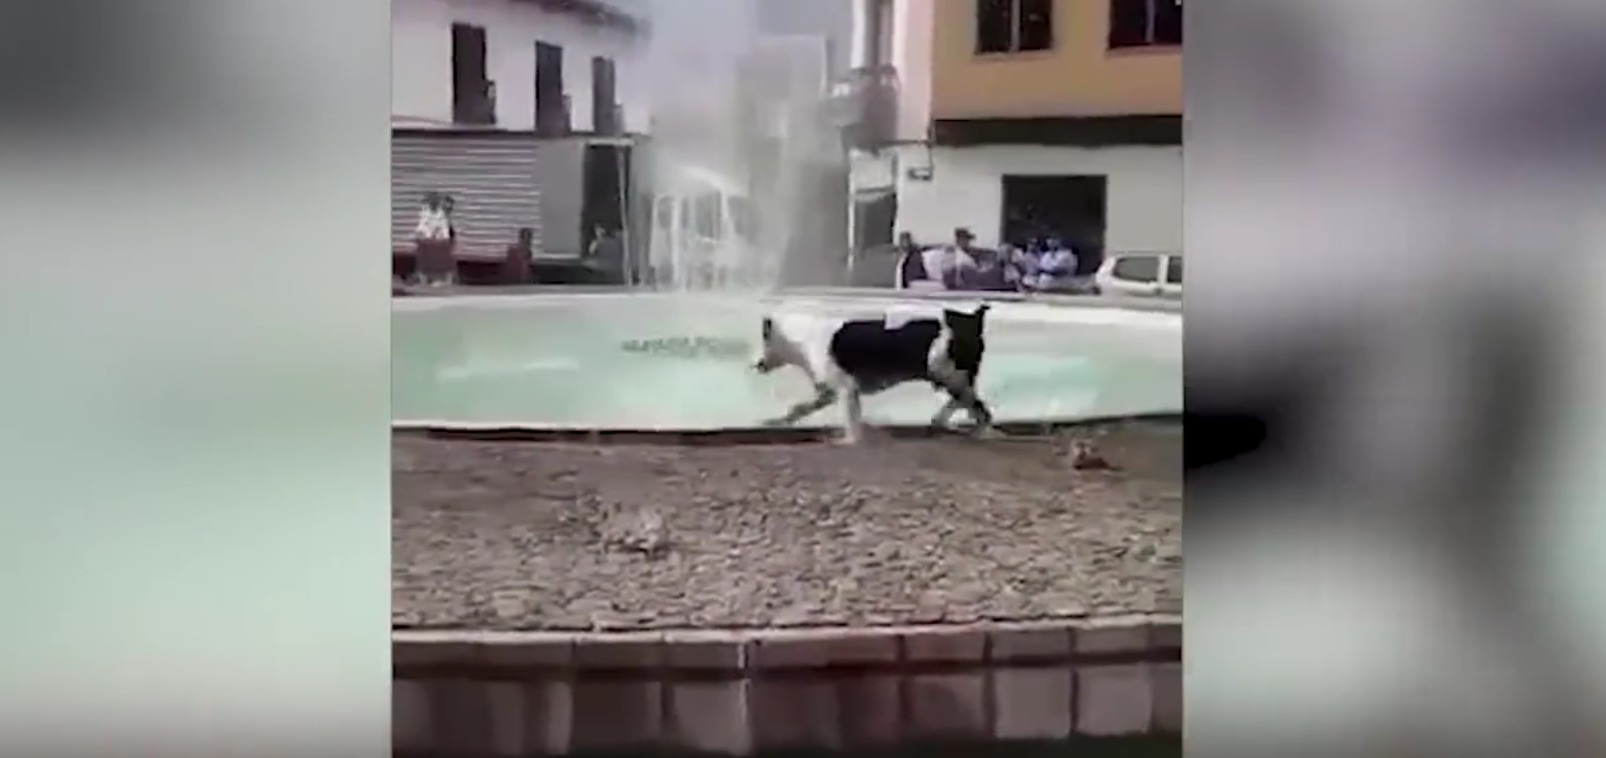 Il cane vede una fontana: la sua gioia è incontenibile [VIDEO]